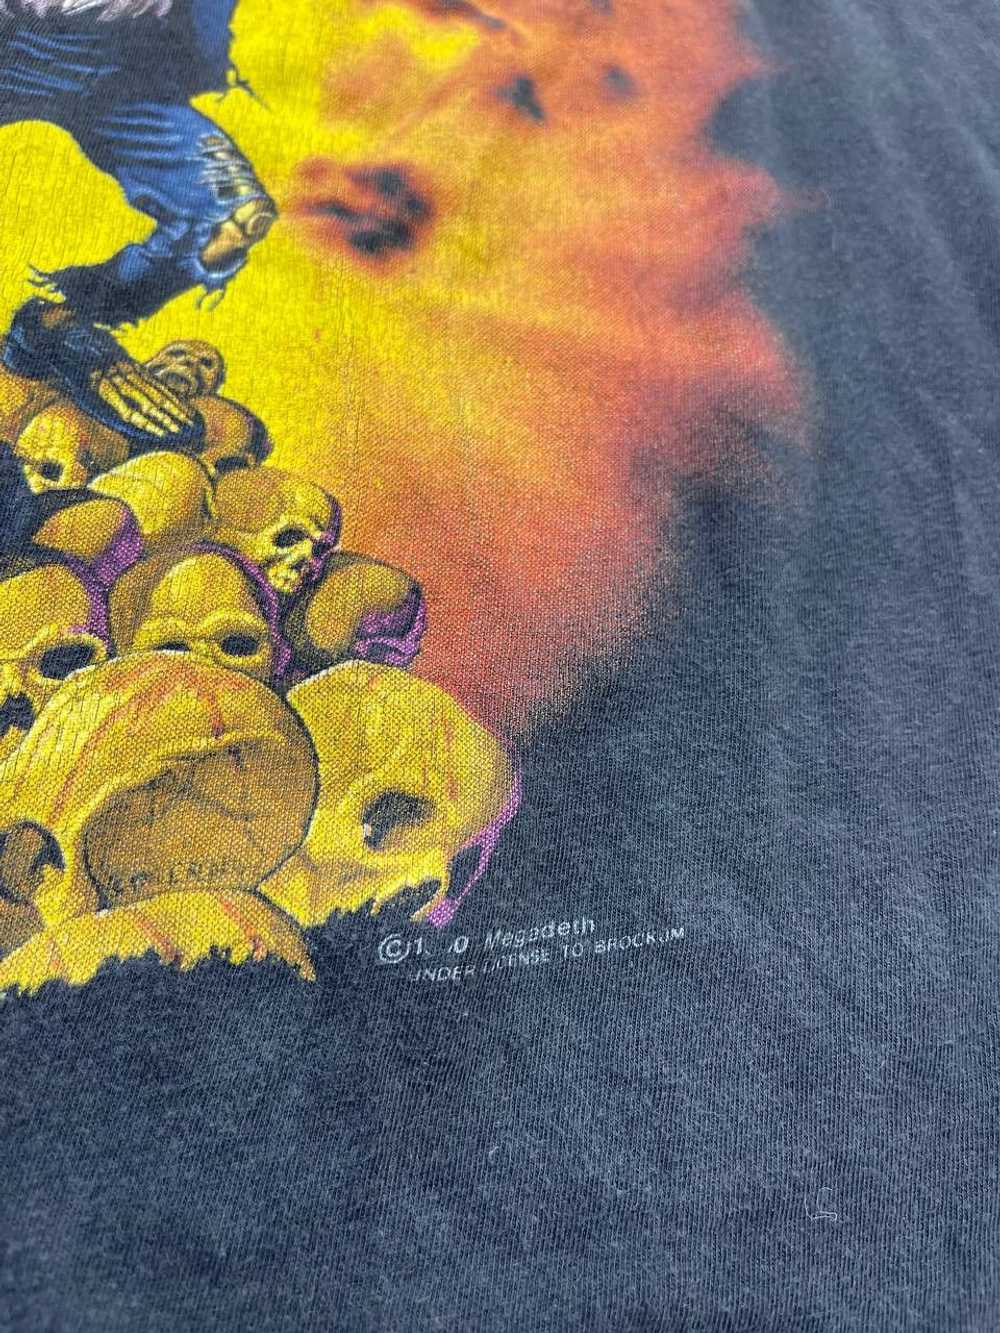 Megadeth × Rock T Shirt × Vintage Megadeth 1991 O… - image 3